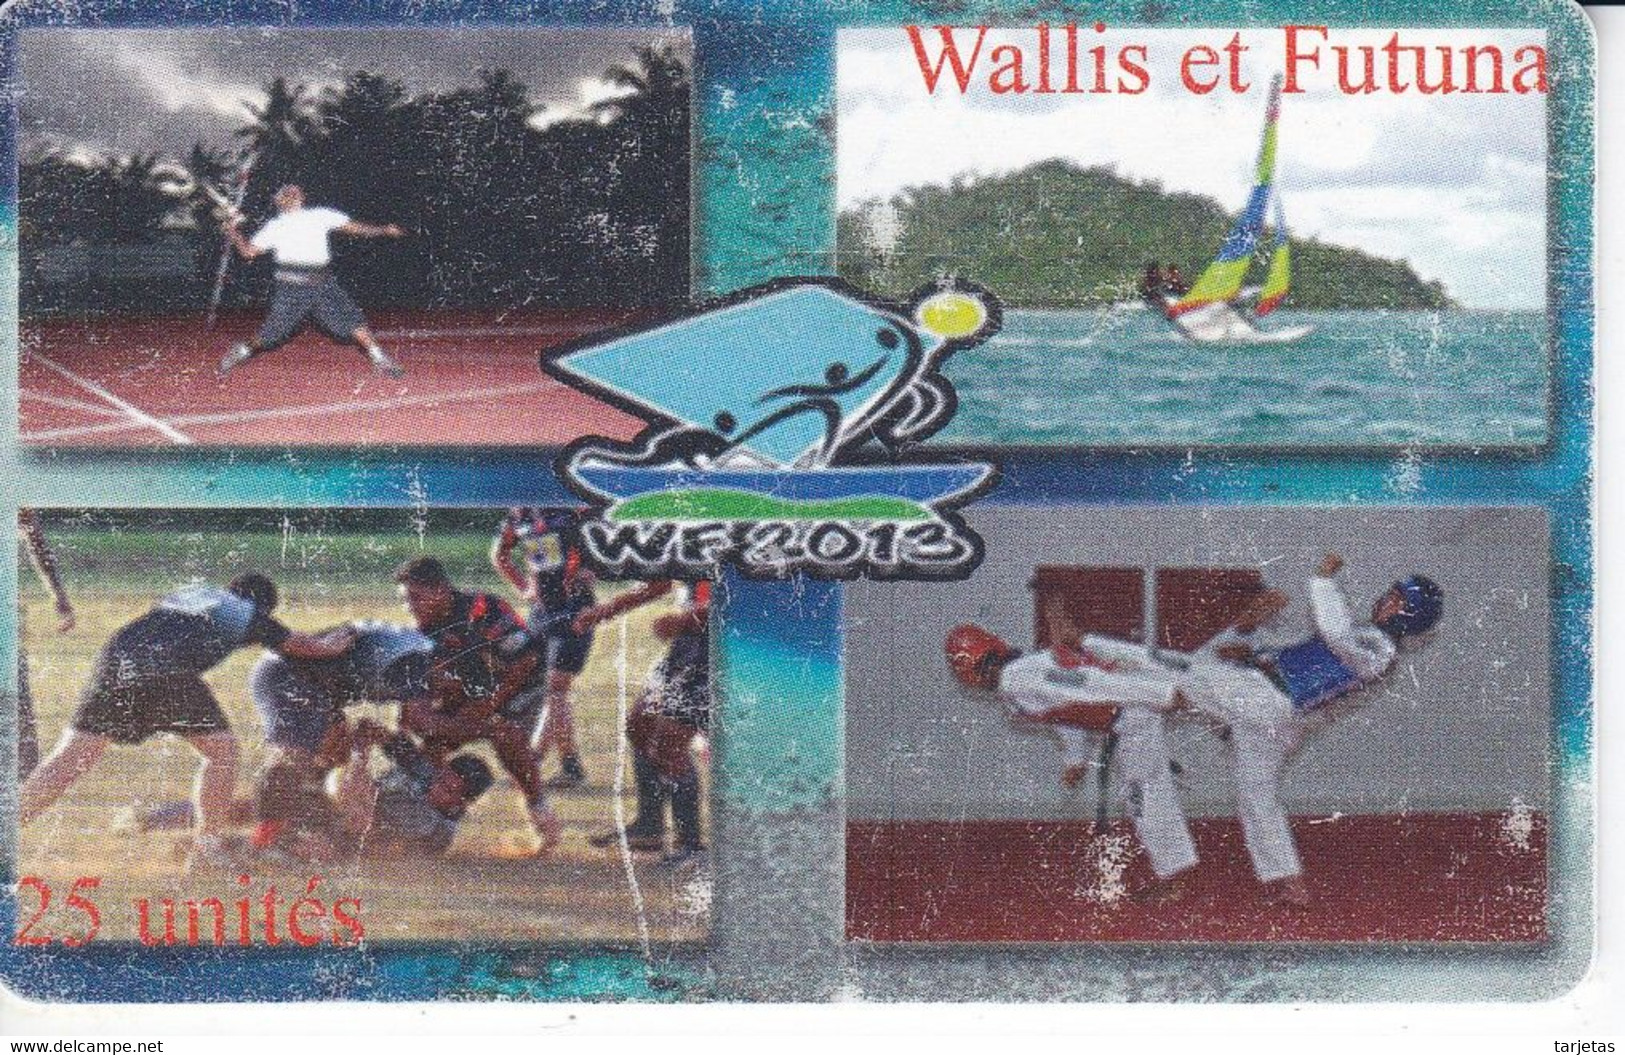 TARJETA DE WALLIS ET FUTUNA DE 25 UNITES DE WF 2013 DEL AÑO 2013 (DEPORTE-SPORT) - Wallis Y Futuna